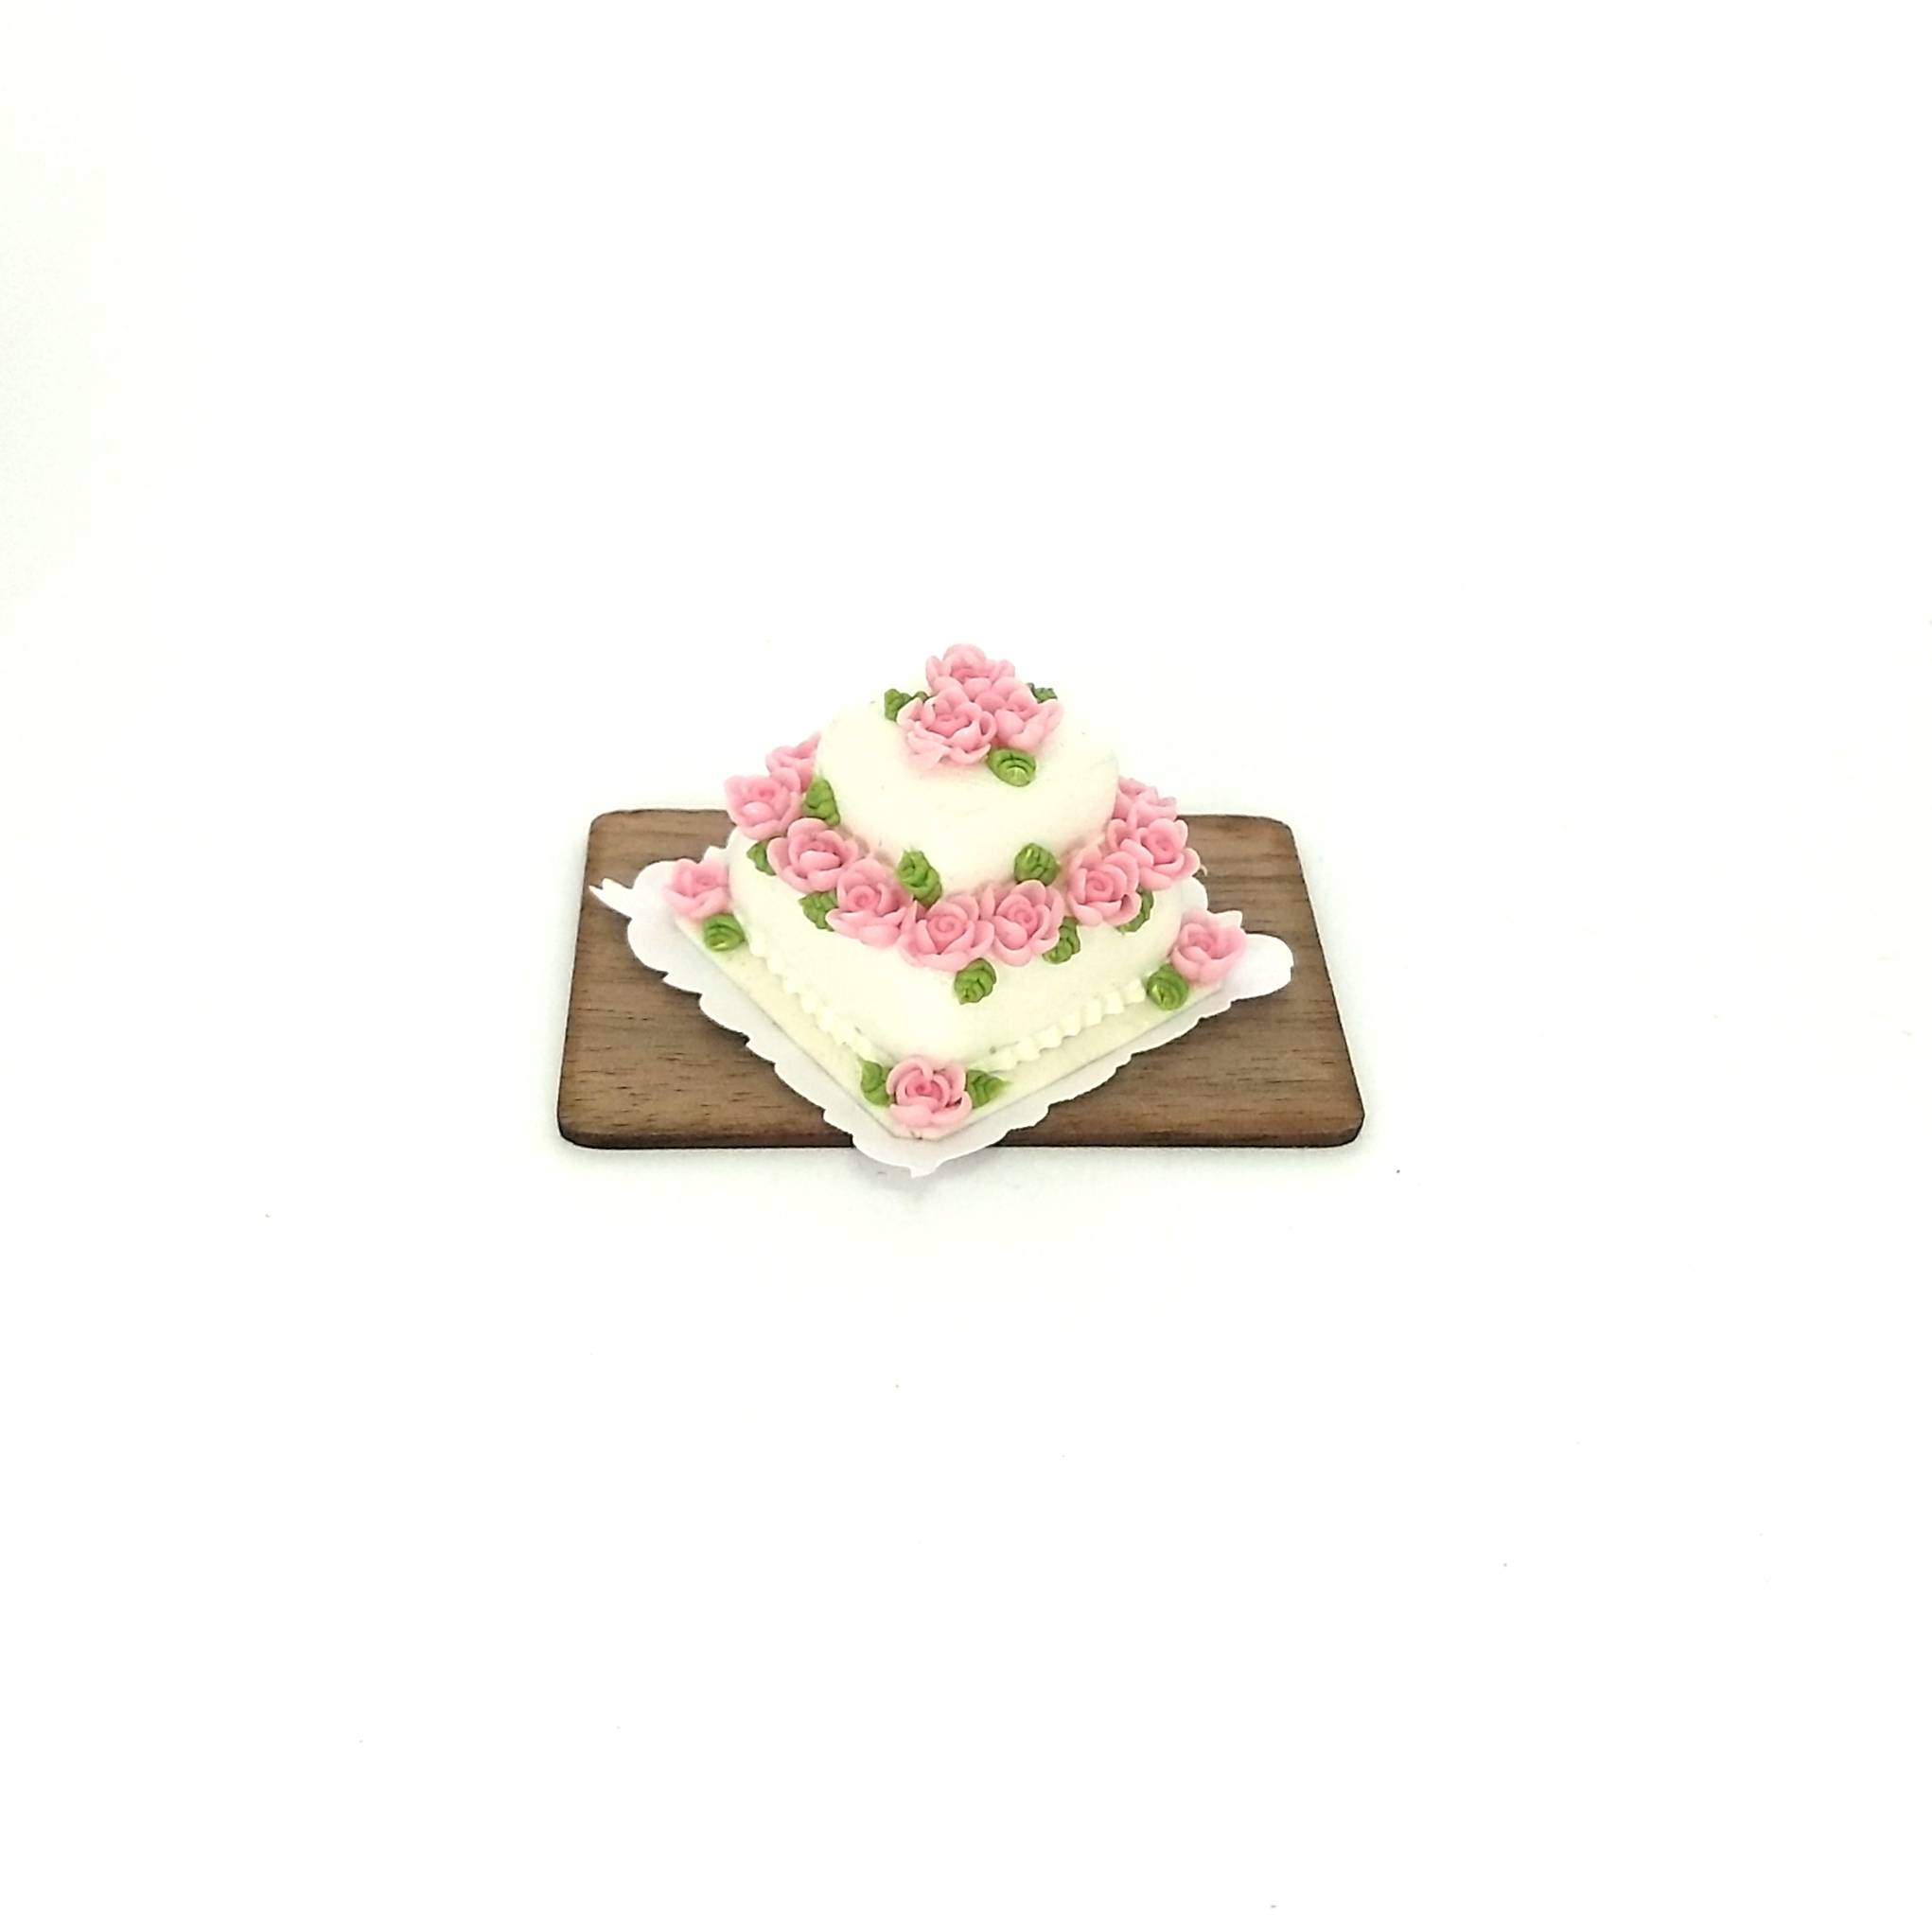 Pastel de 2 pisos cuadrado decorado con rosas | Miniaturas Saribel